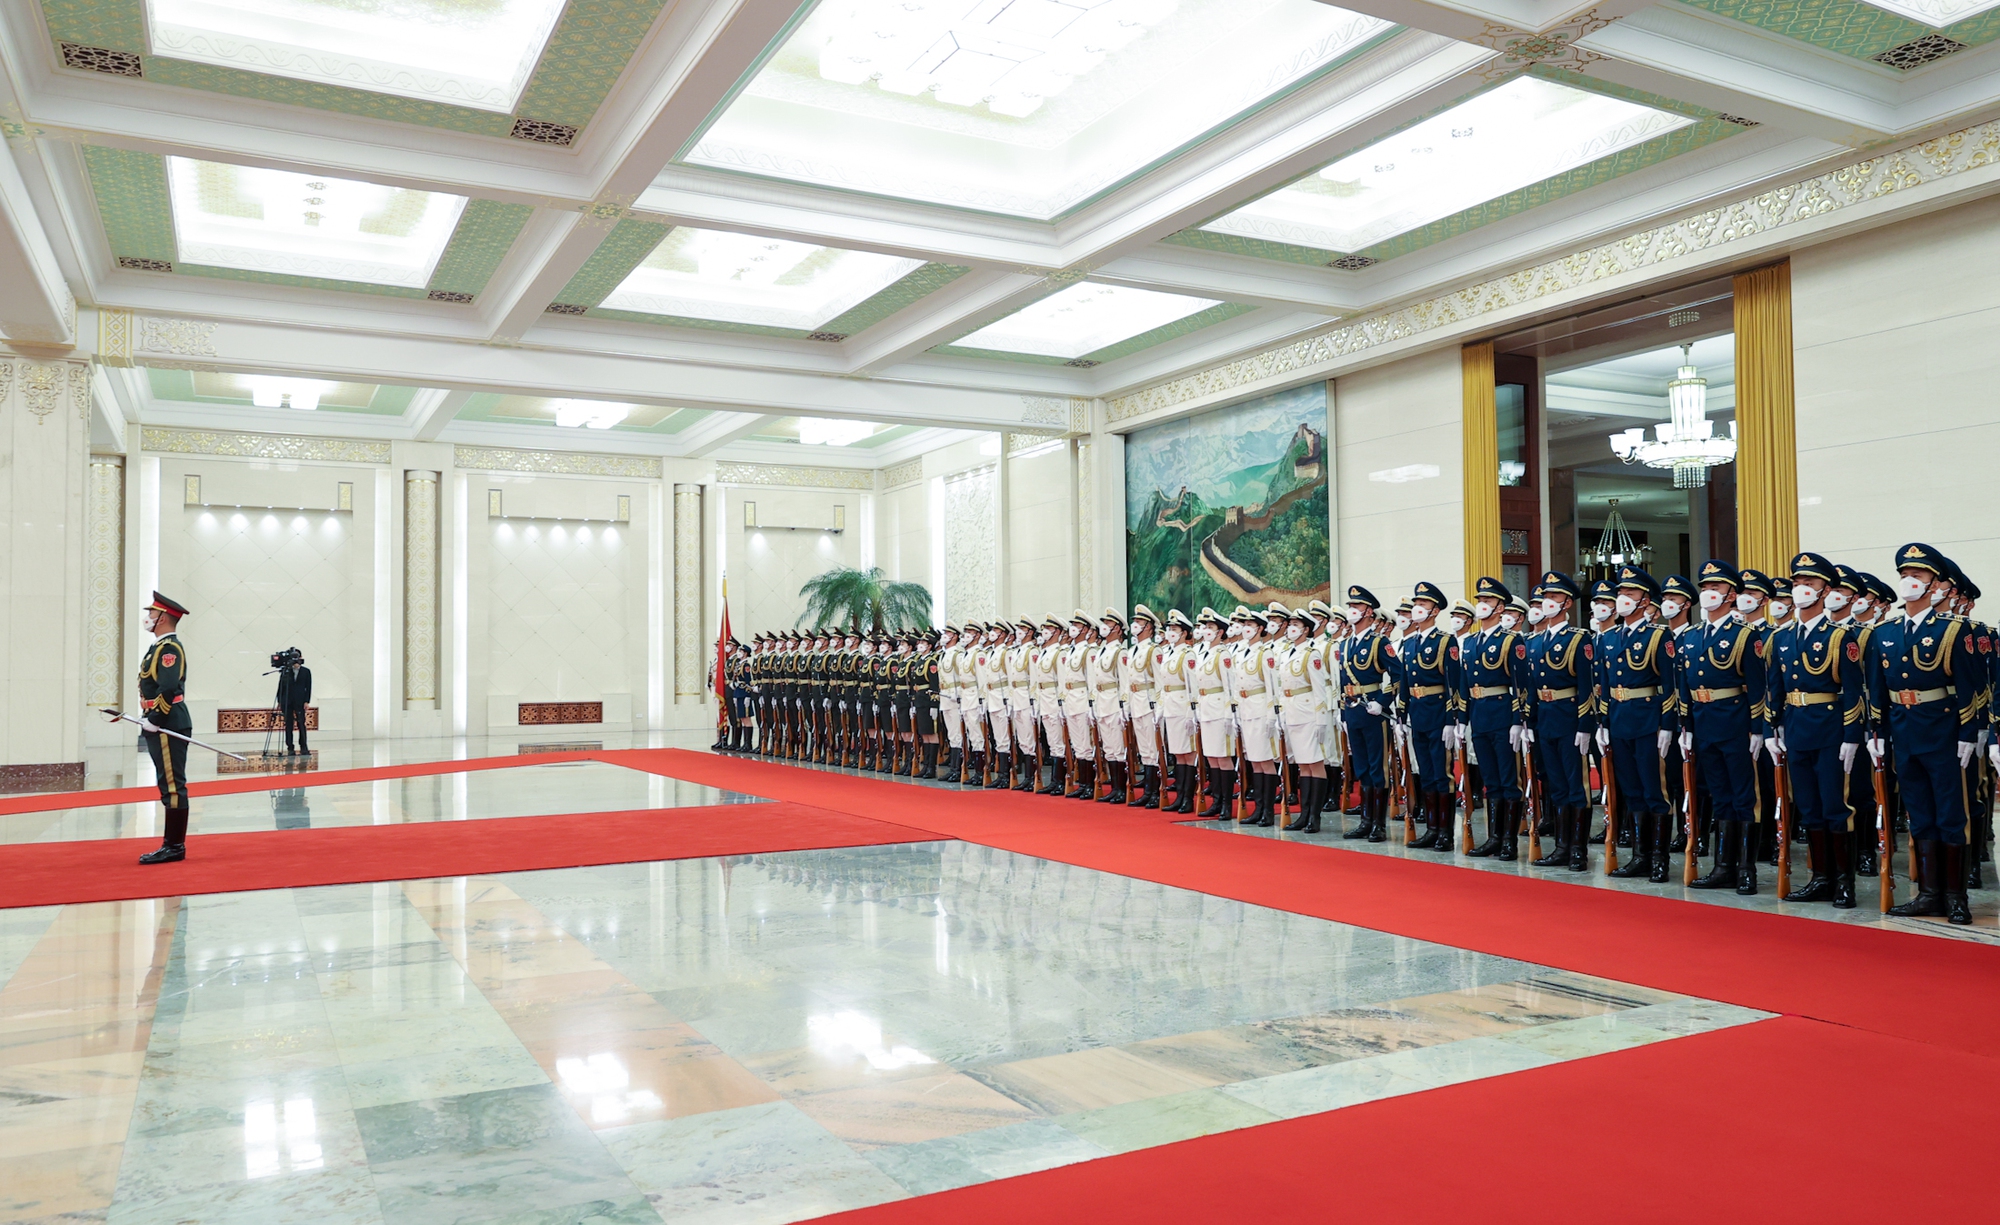 Việc Thủ tướng Phạm Minh Chính thăm chính thức Trung Quốc và Trung Quốc đón Thủ tướng Phạm Minh Chính thể hiện sự coi trọng của hai Đảng, hai nước trong quan hệ Đối tác Hợp tác chiến lược toàn diện Việt Nam-Trung Quốc - Ảnh: VGP/Nhật Bắc